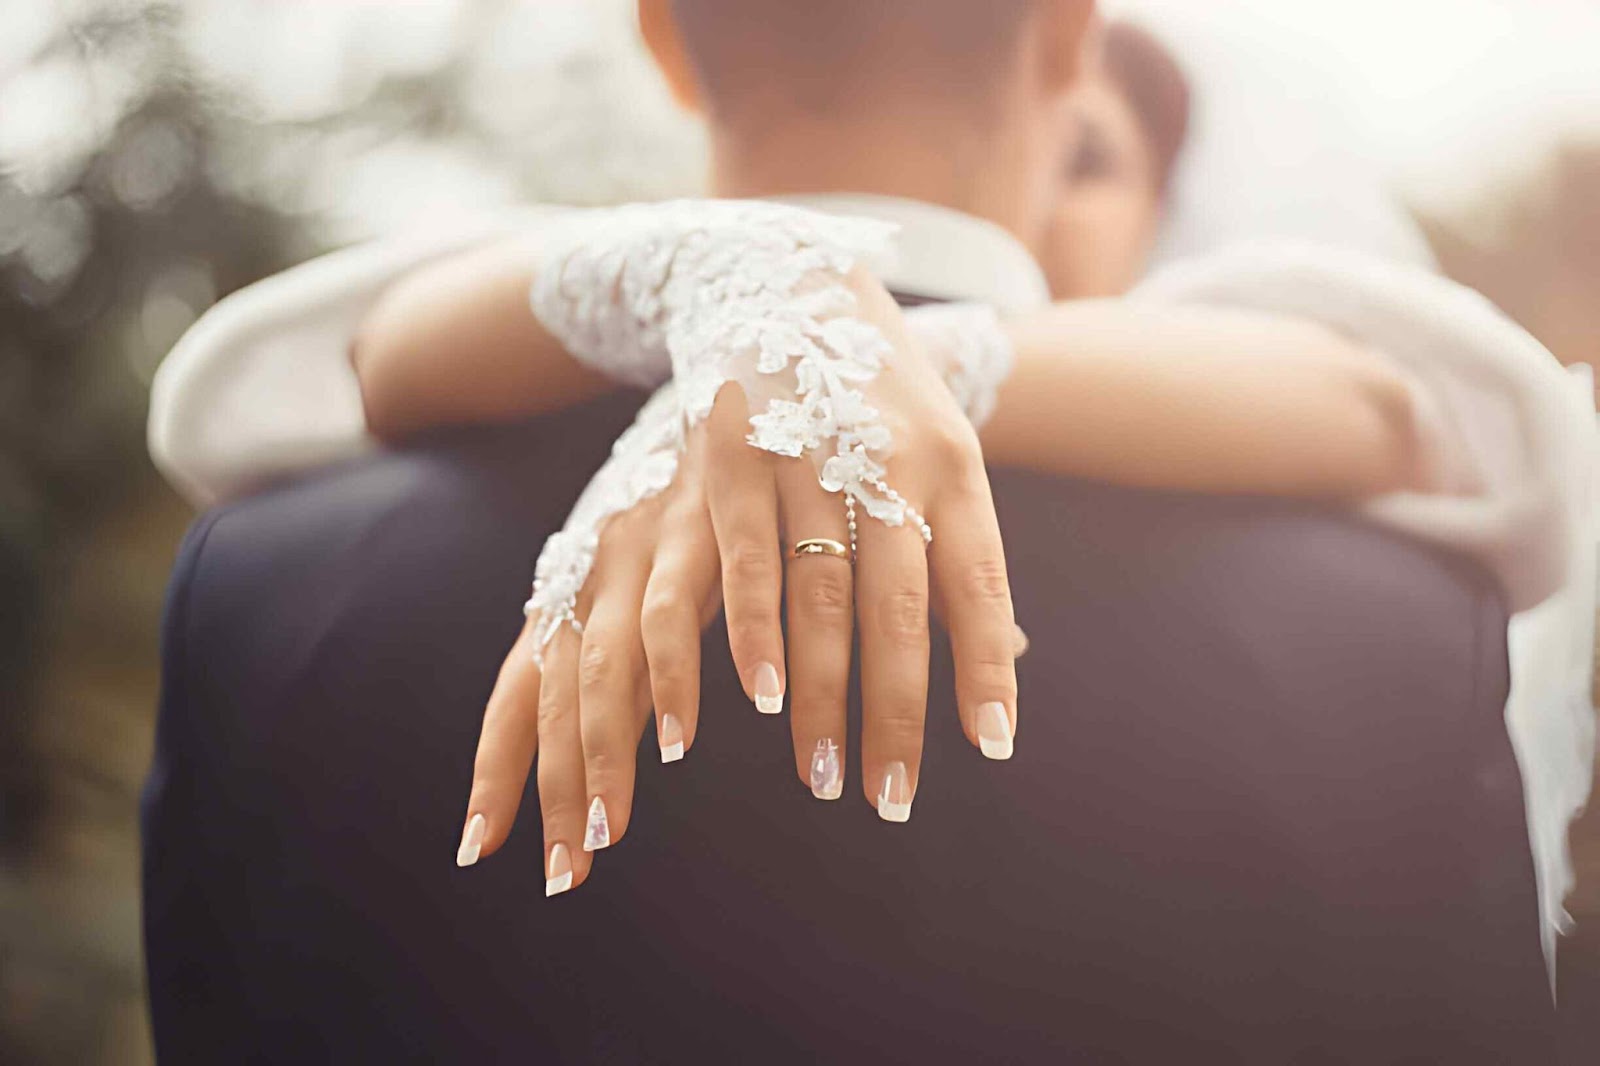 fingerless bridal gloves